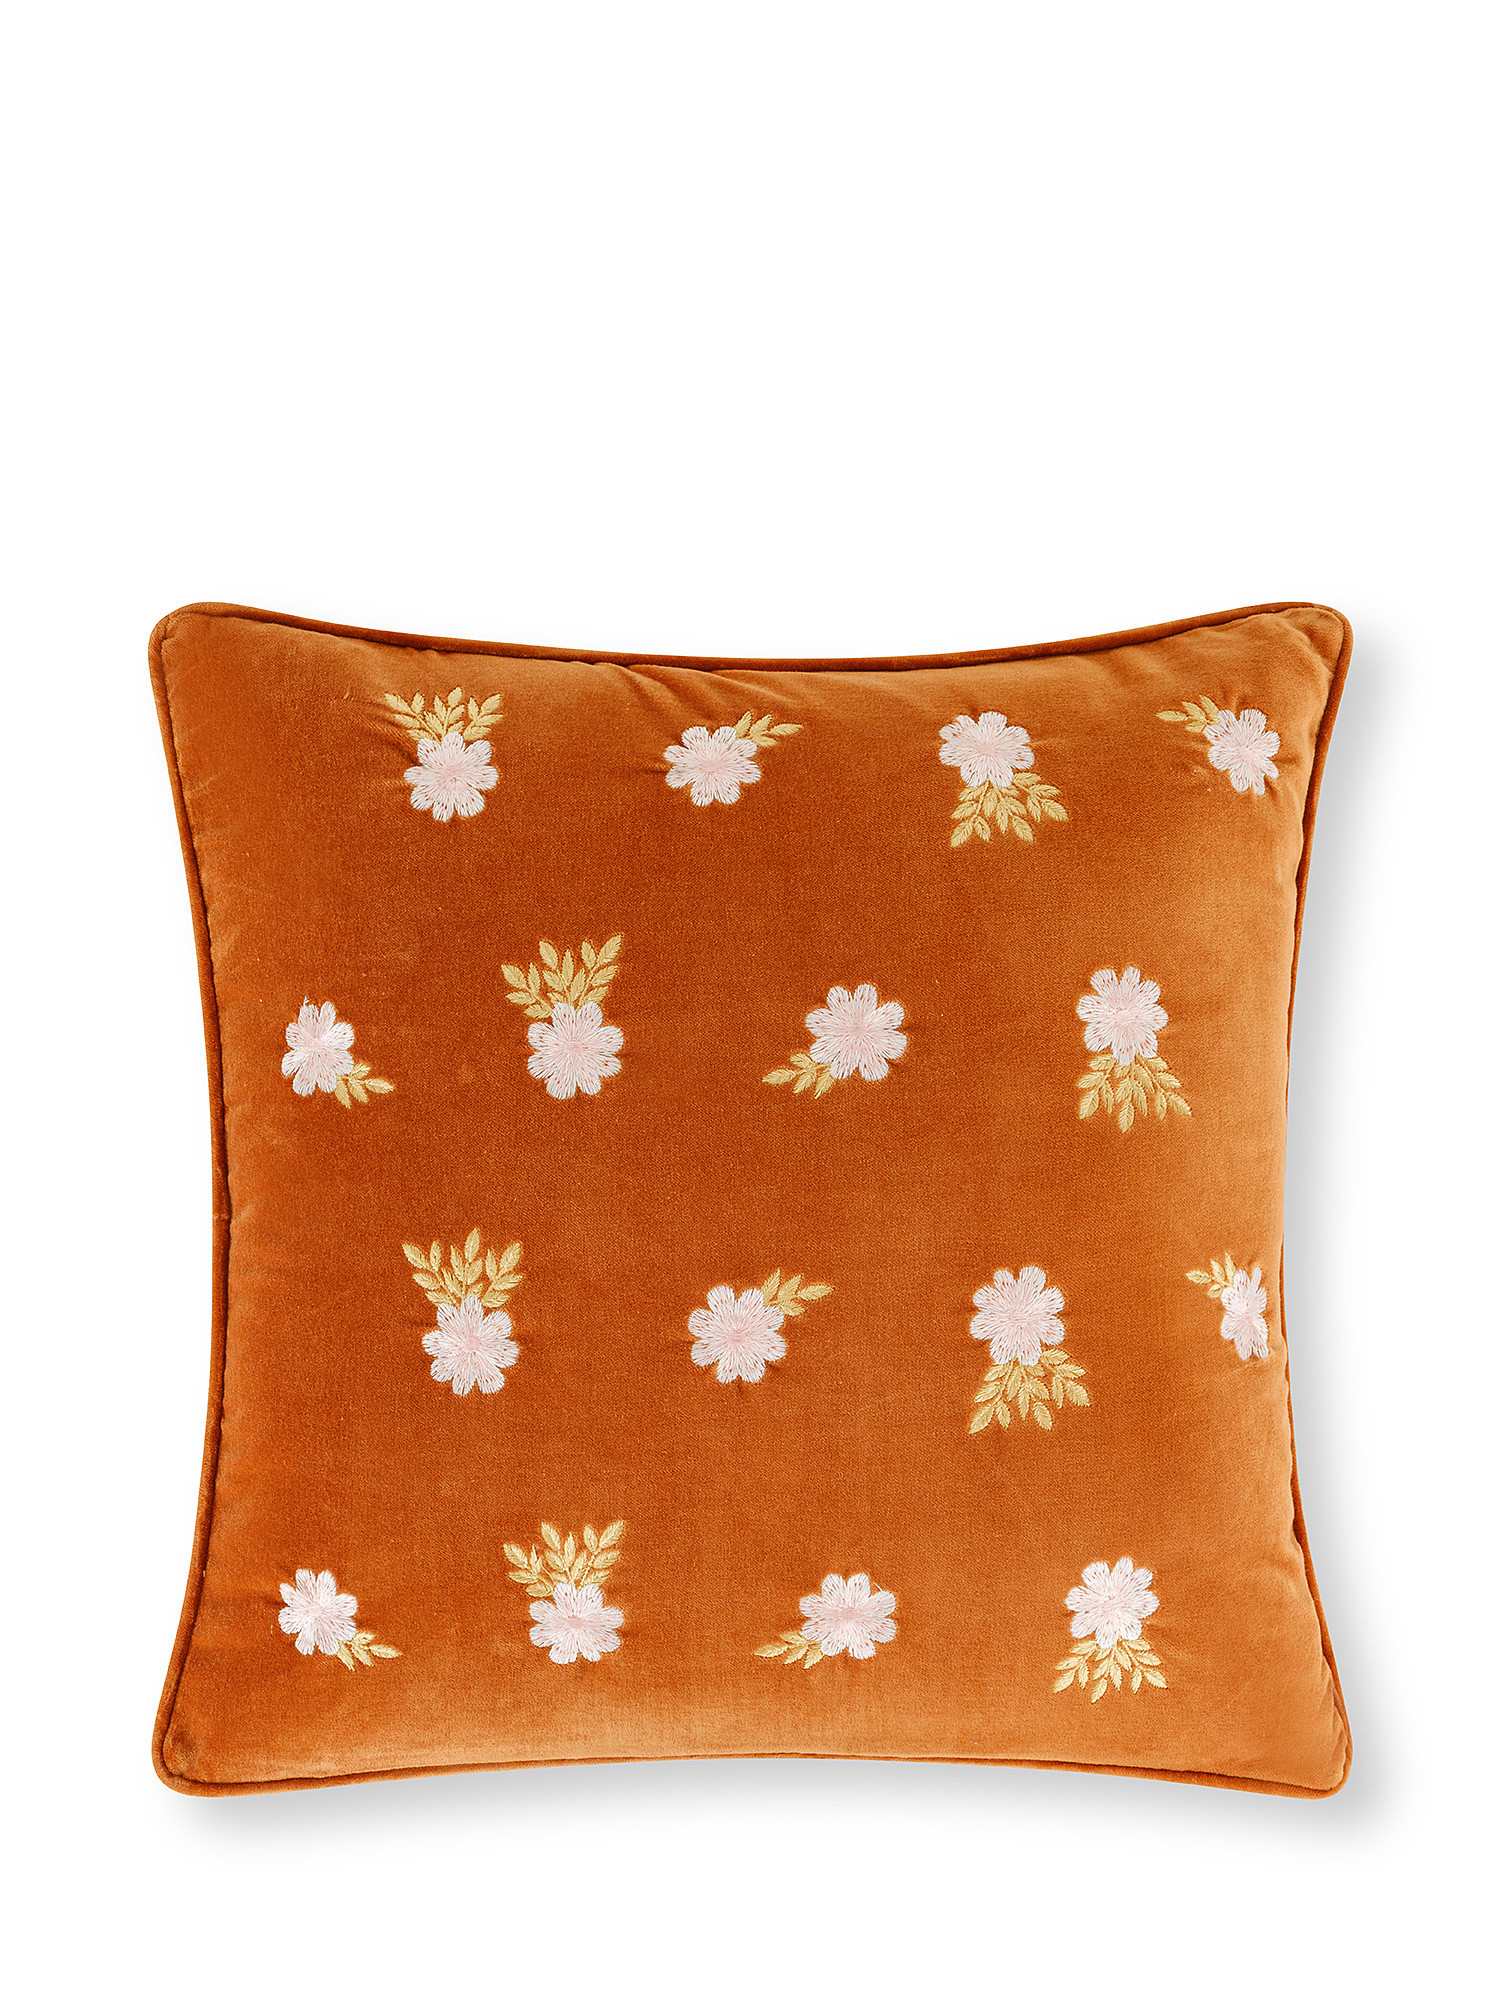 Cuscino velluto ricamo fiori 45x45cm, Arancione, large image number 0